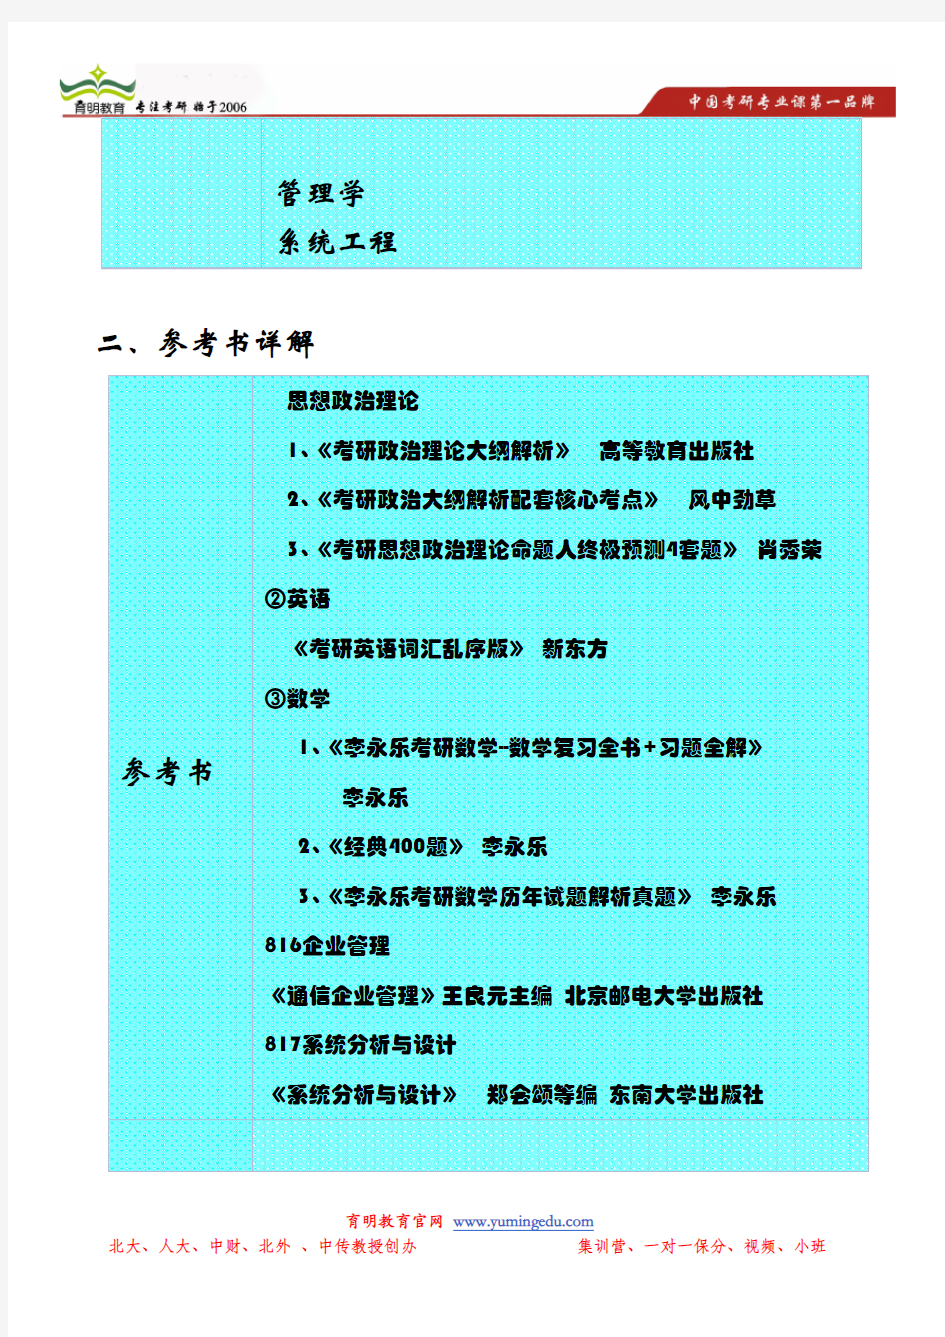 2014年南京邮电大学经济与管理学院管理科学与工程招生目录以及参考书详解